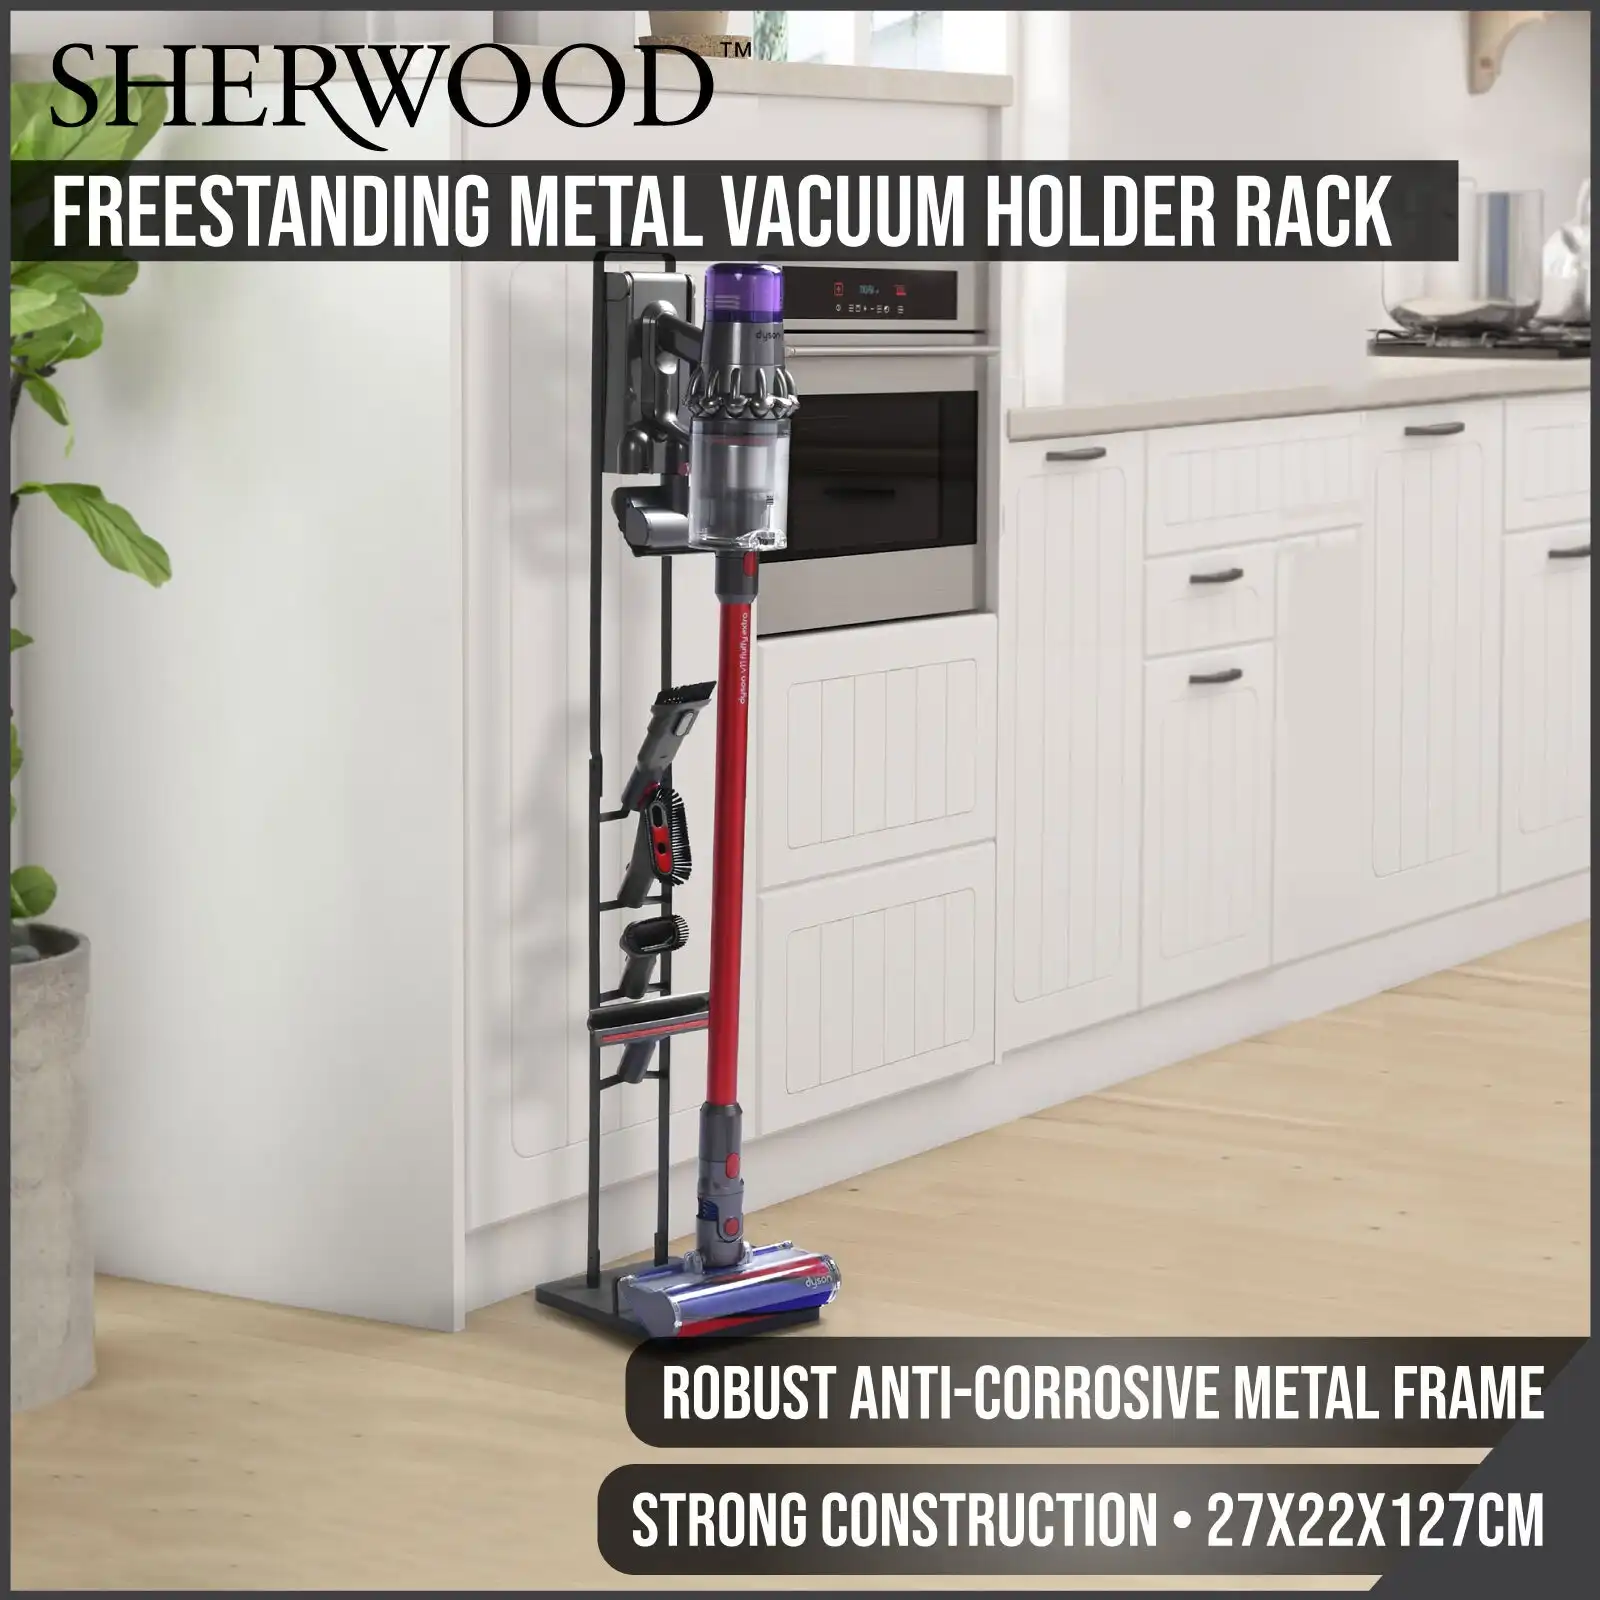 Sherwood Home Freestanding Metal Vacuum Holder Rack For Dyson V6, V7, V8, V10 & V11